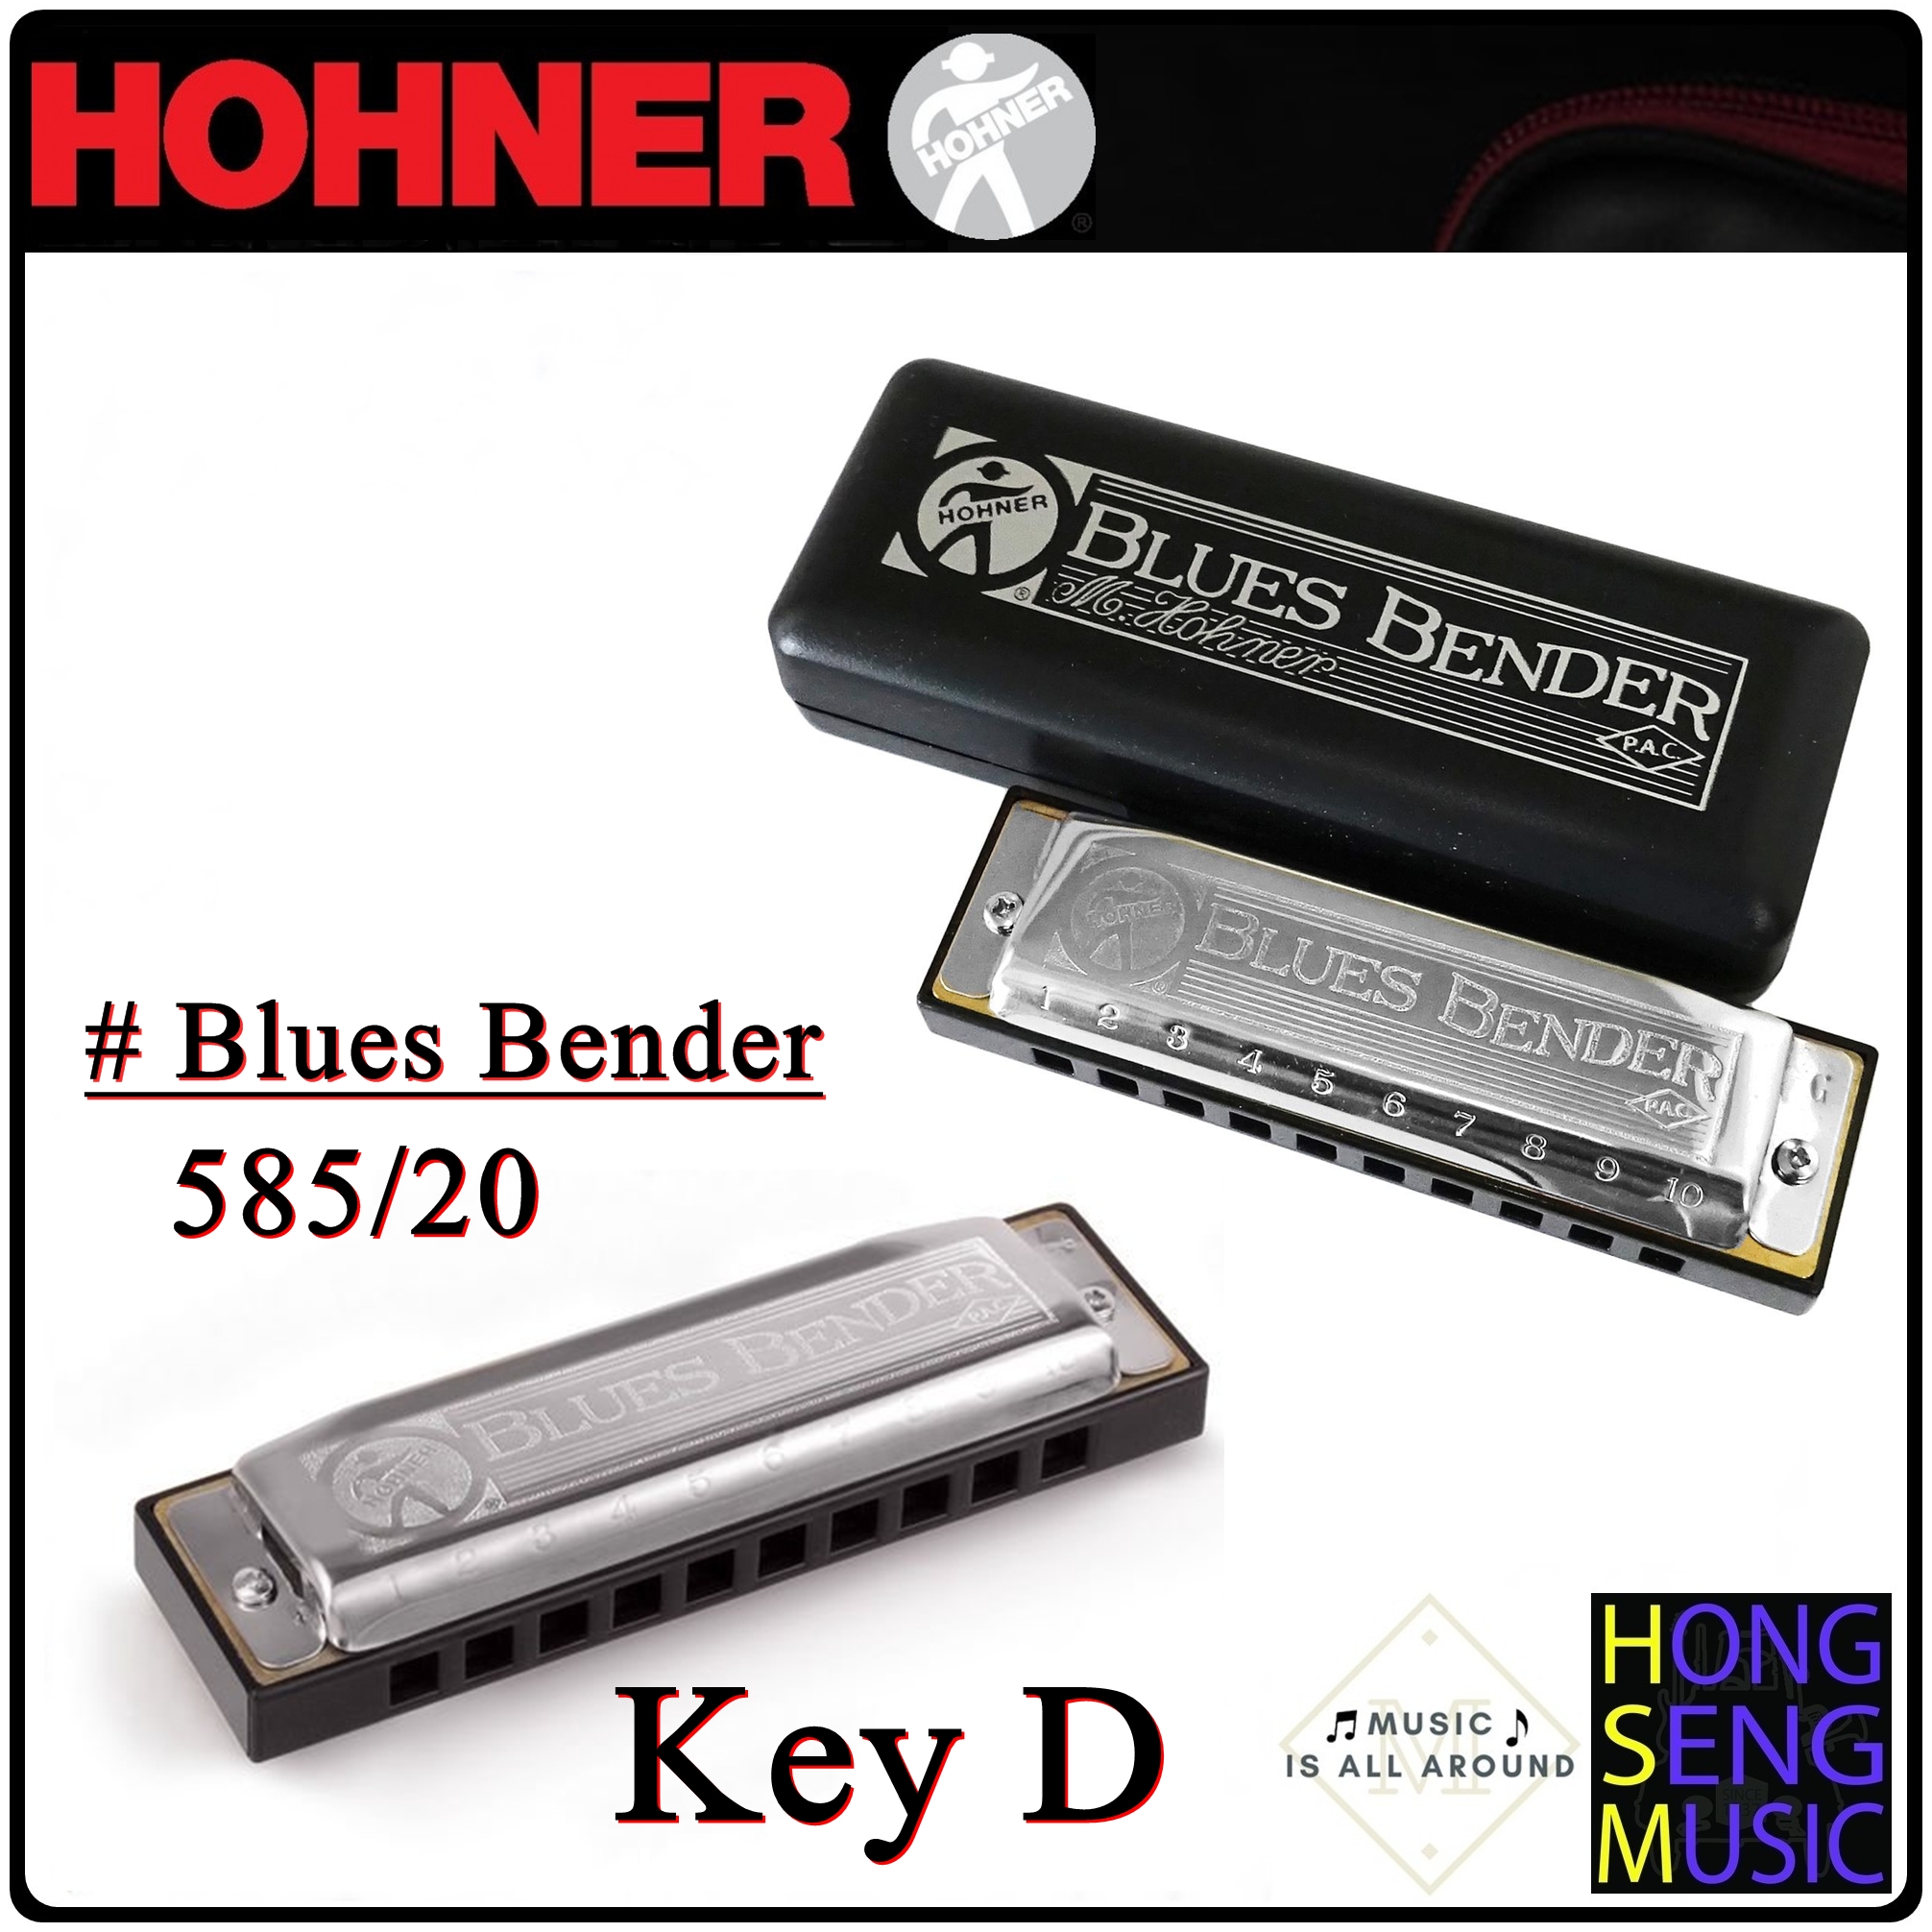 ฮาร์โมนิก้า (เม้าท์ออร์แกน) Hohner รุ่น Blues Bender Harmonica 585/20 Key D